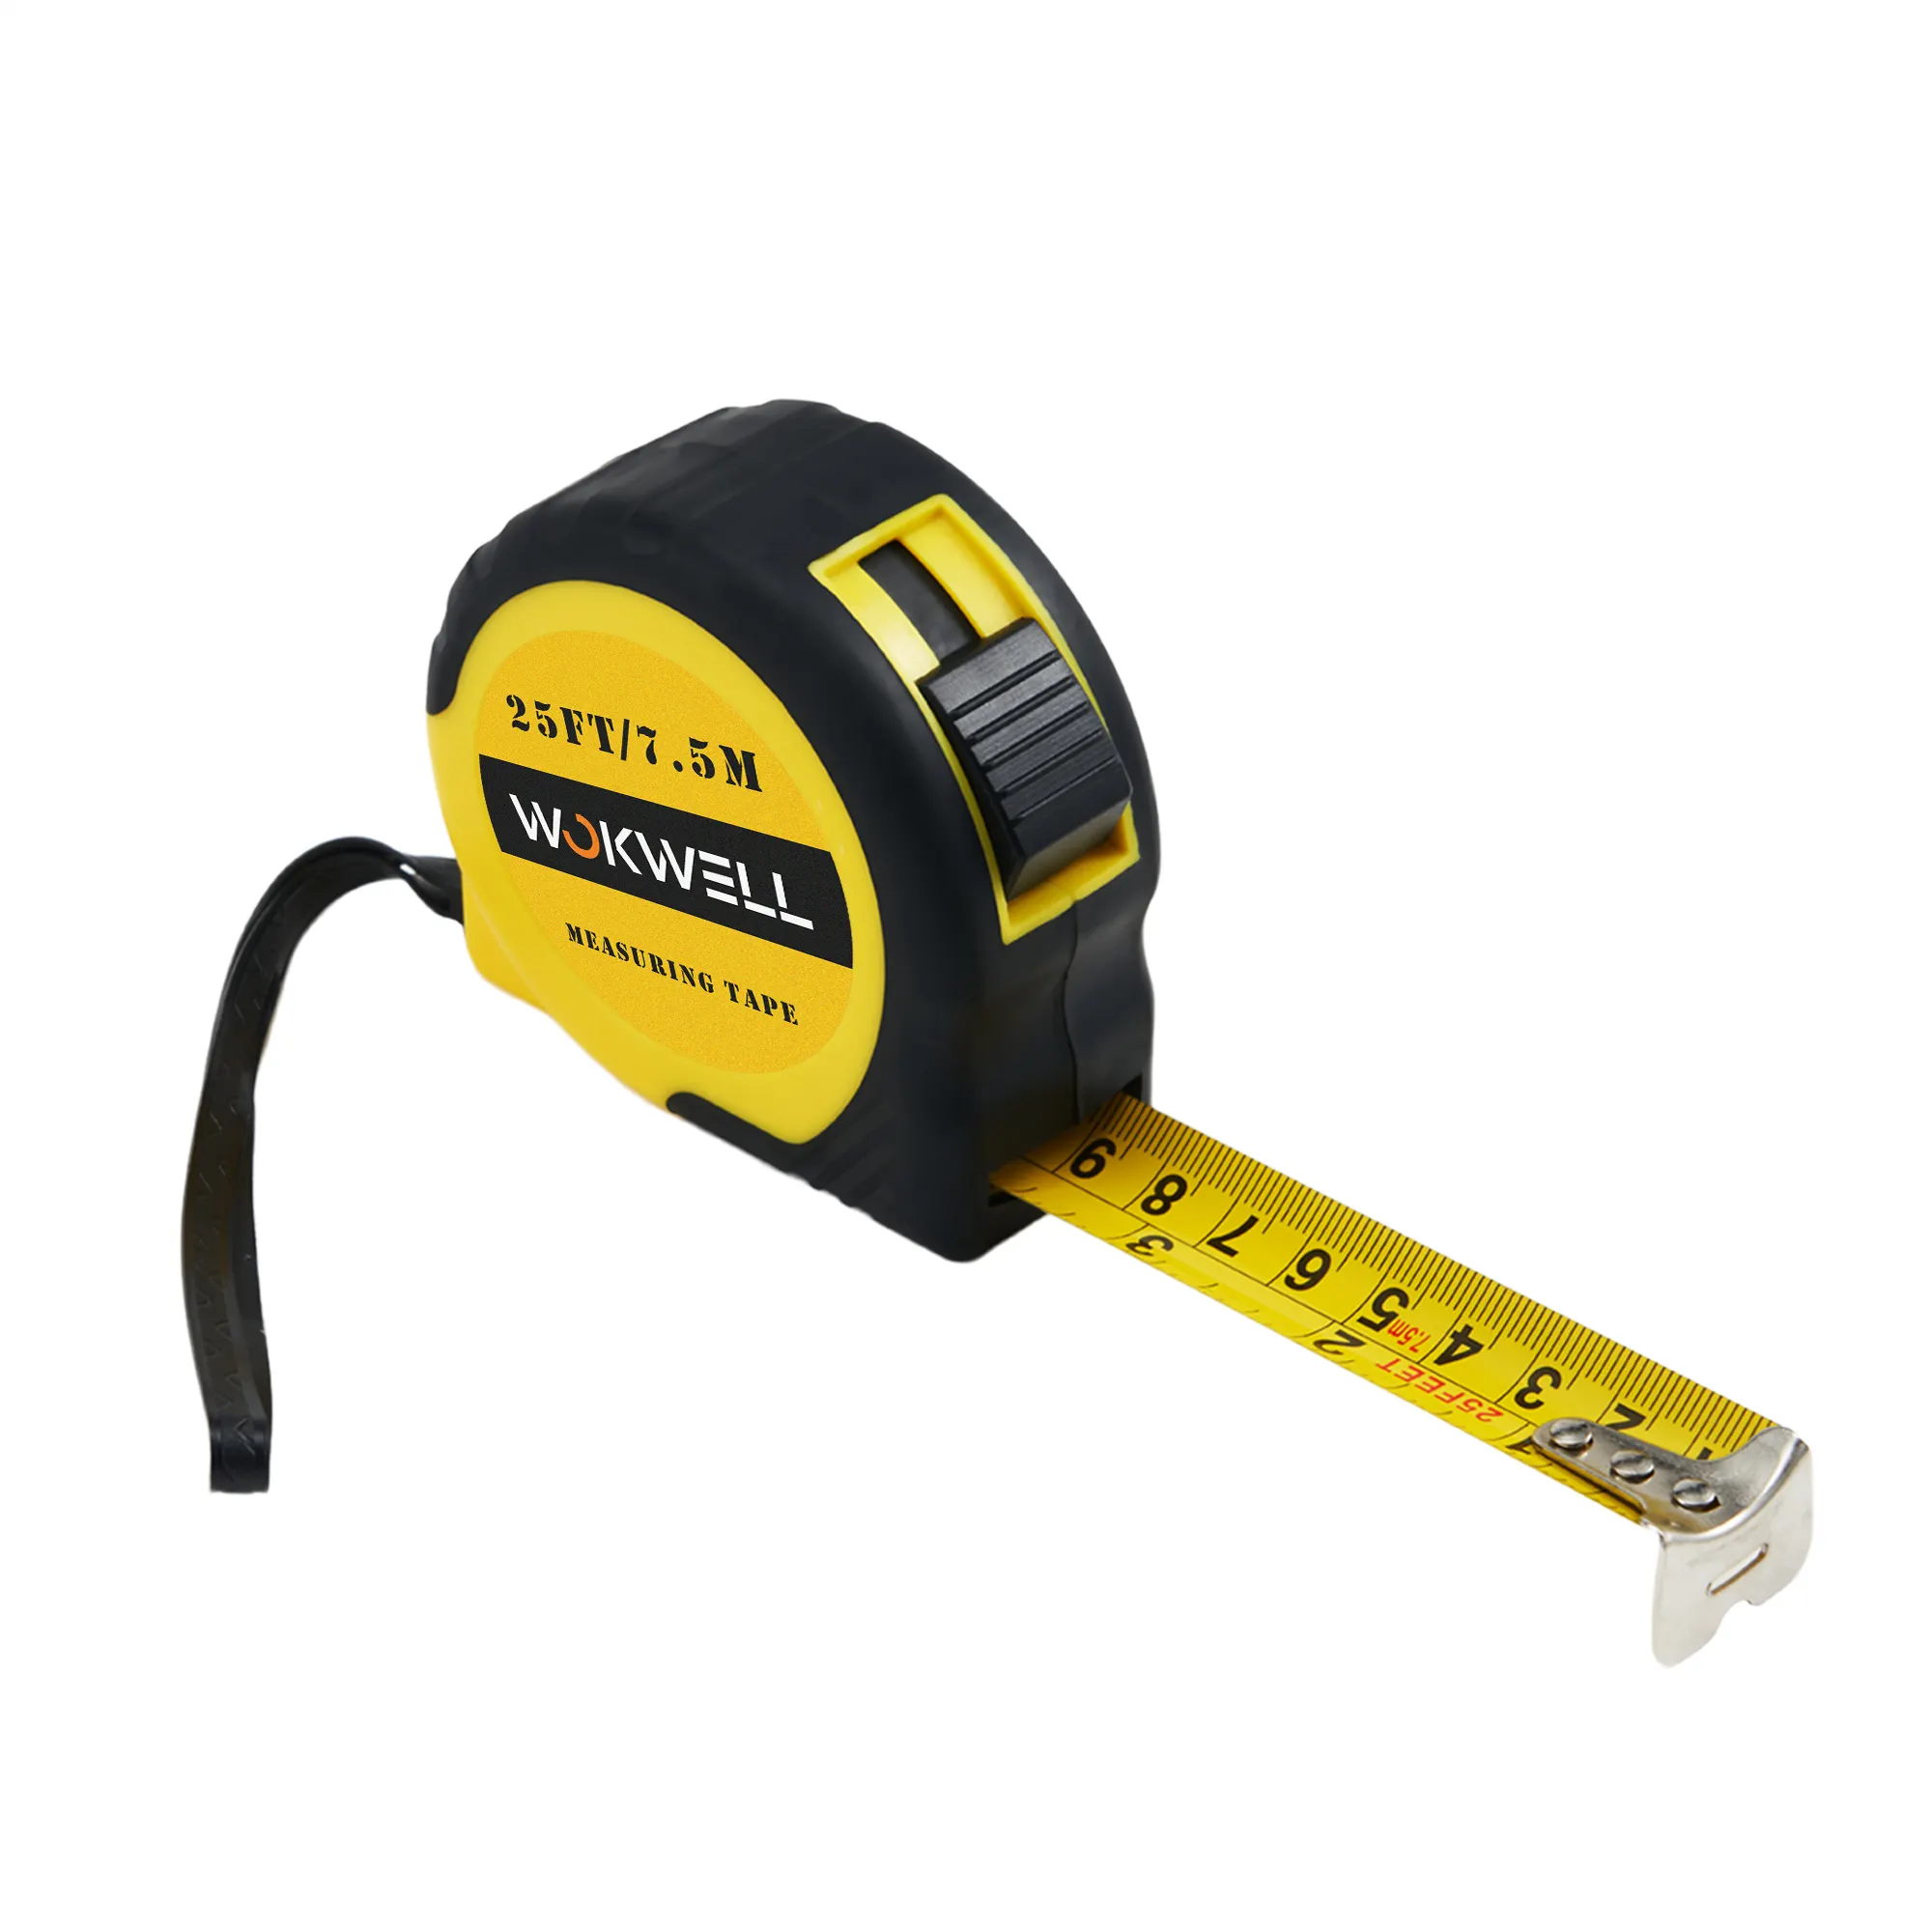 Ruban à mesurer rétractable 5M Griplock Compteur de mesure impérial (noir jaune) ABS et acier inoxydable